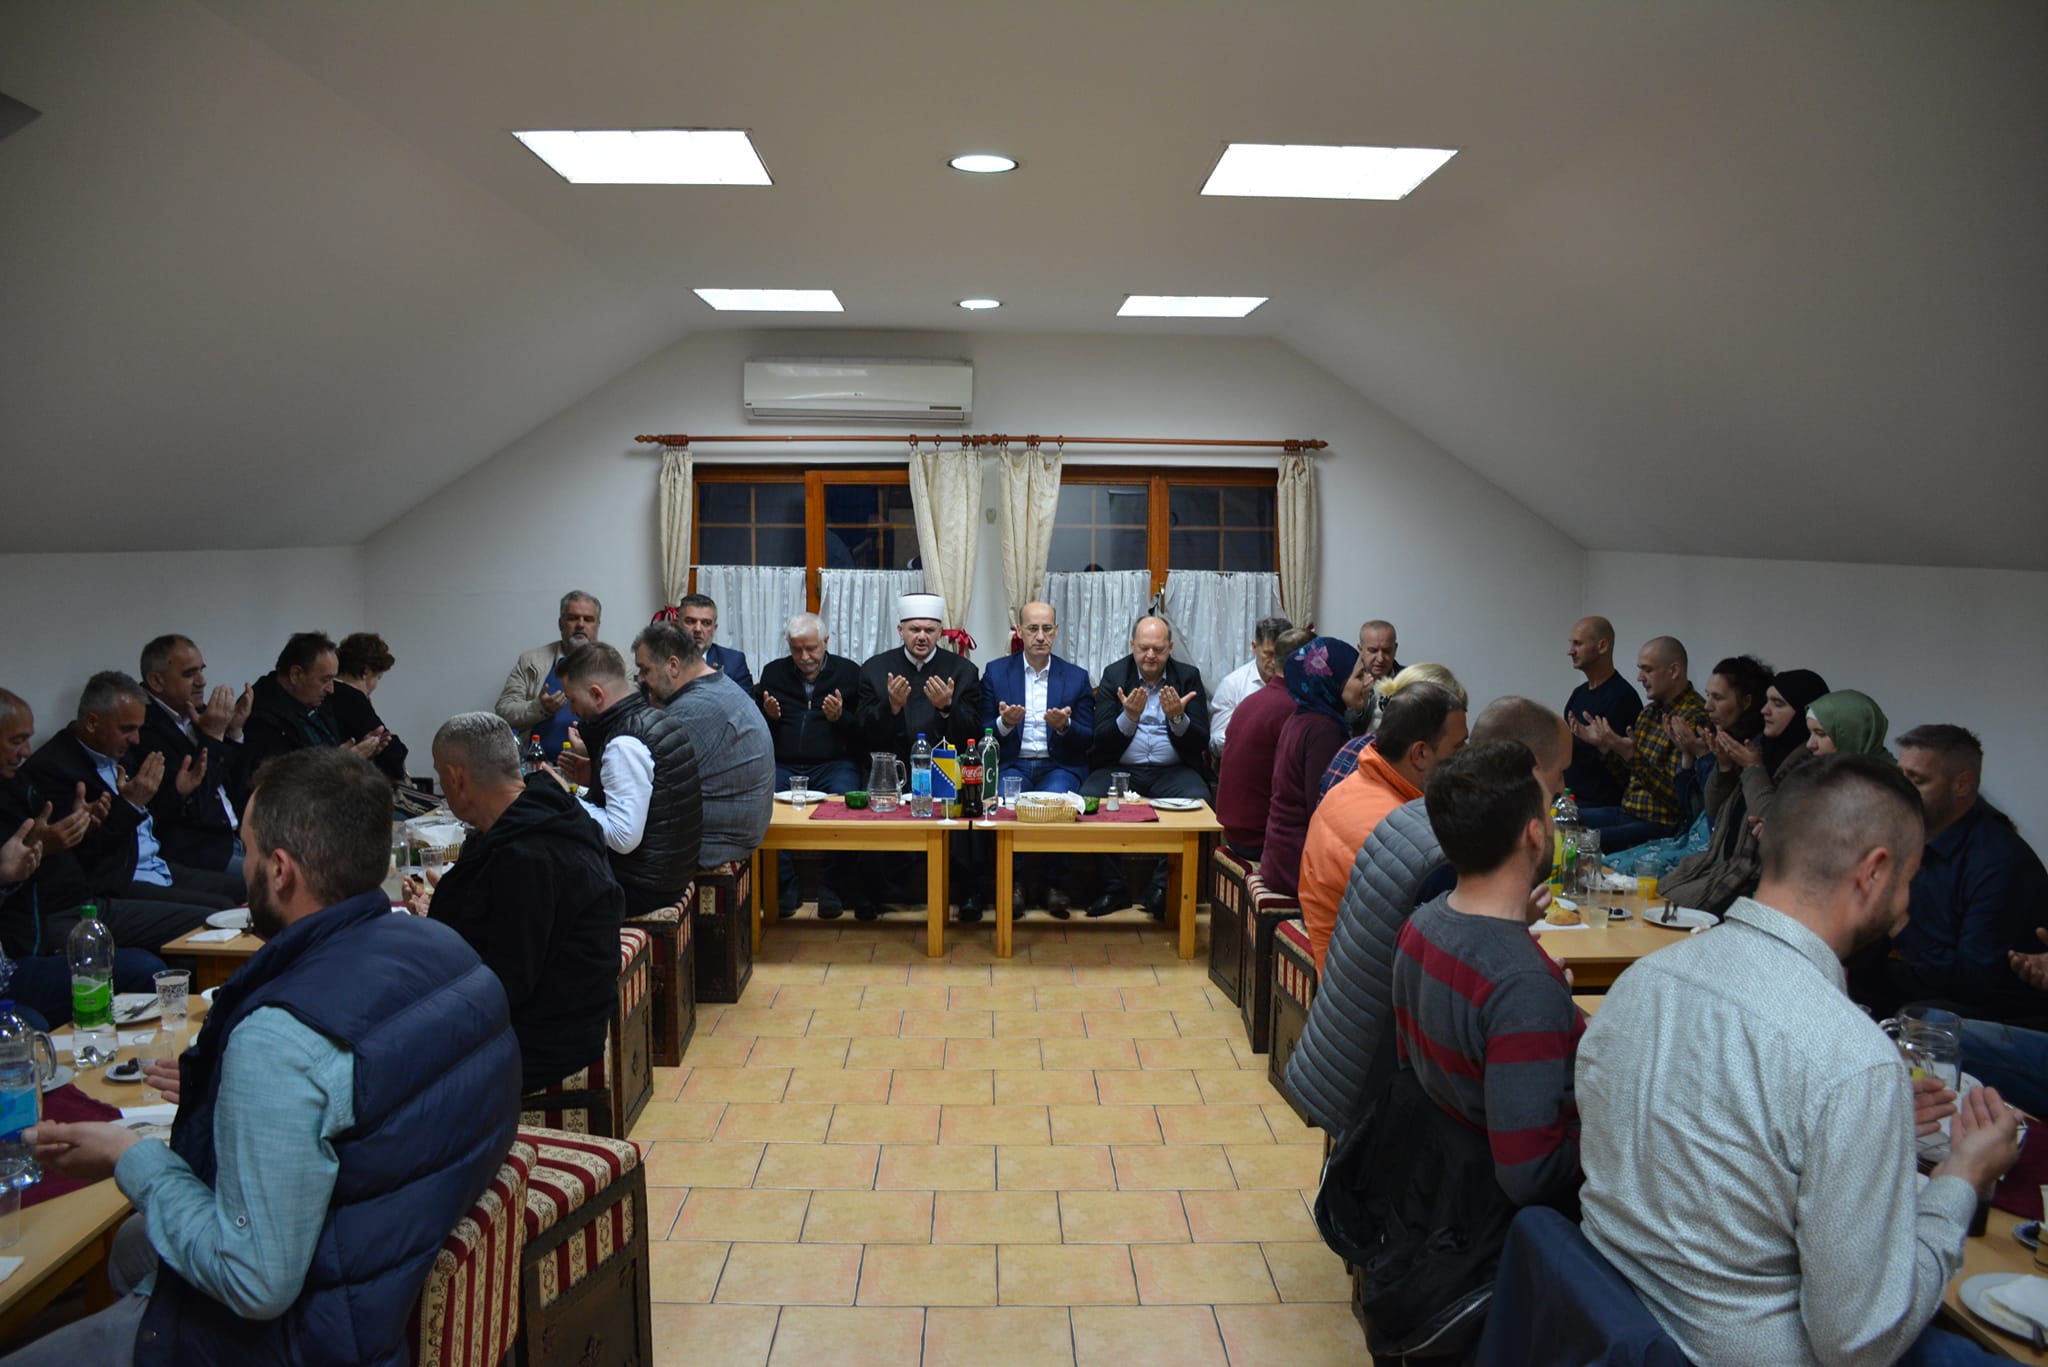 Mektebski centar Bijeljina – Iftar sa vakifima, aktivistima, uposlenicima, saradnicima i prijateljima MIZ Bijeljina